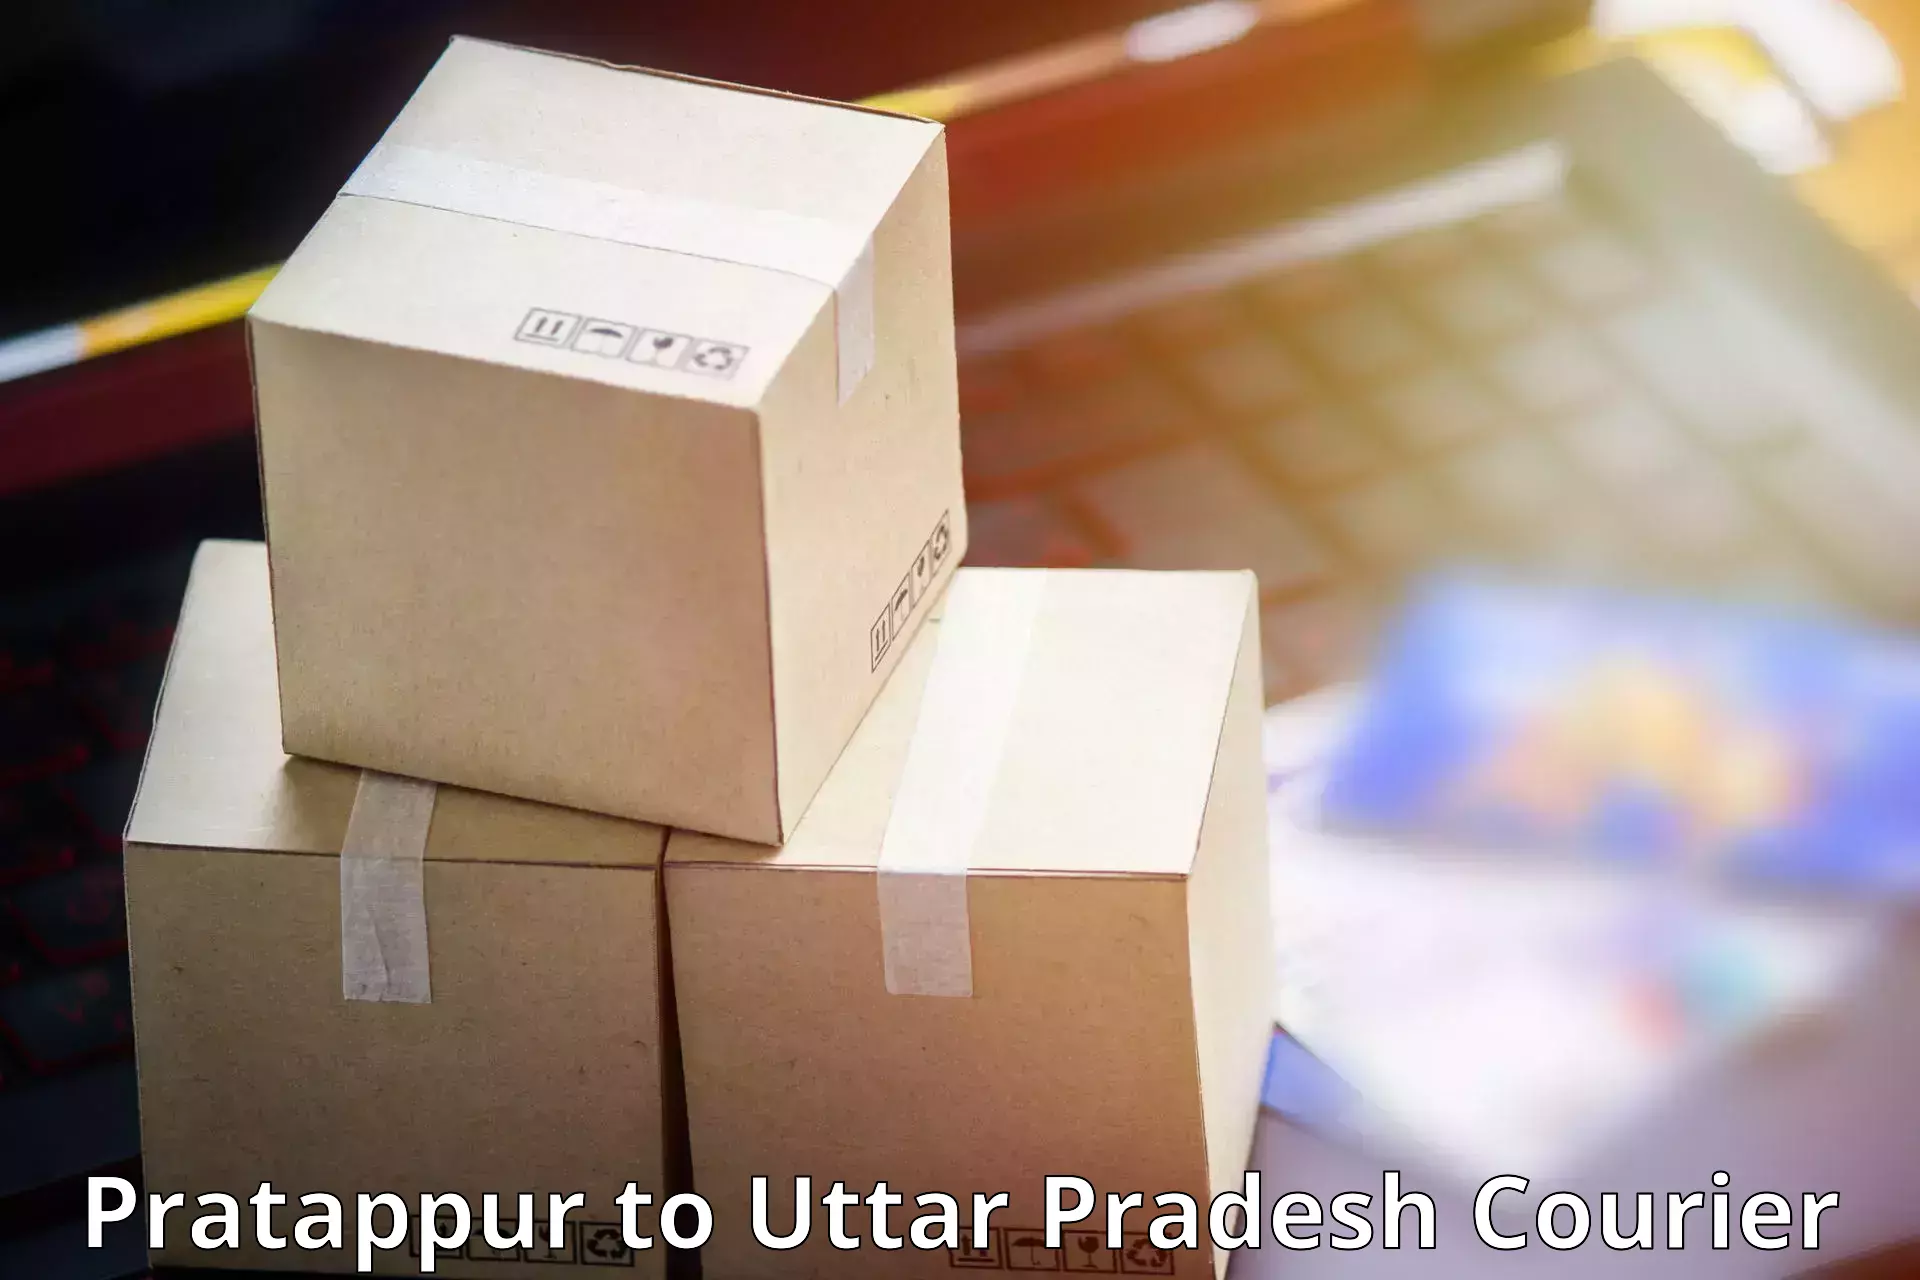 Professional courier services Pratappur to Koraon